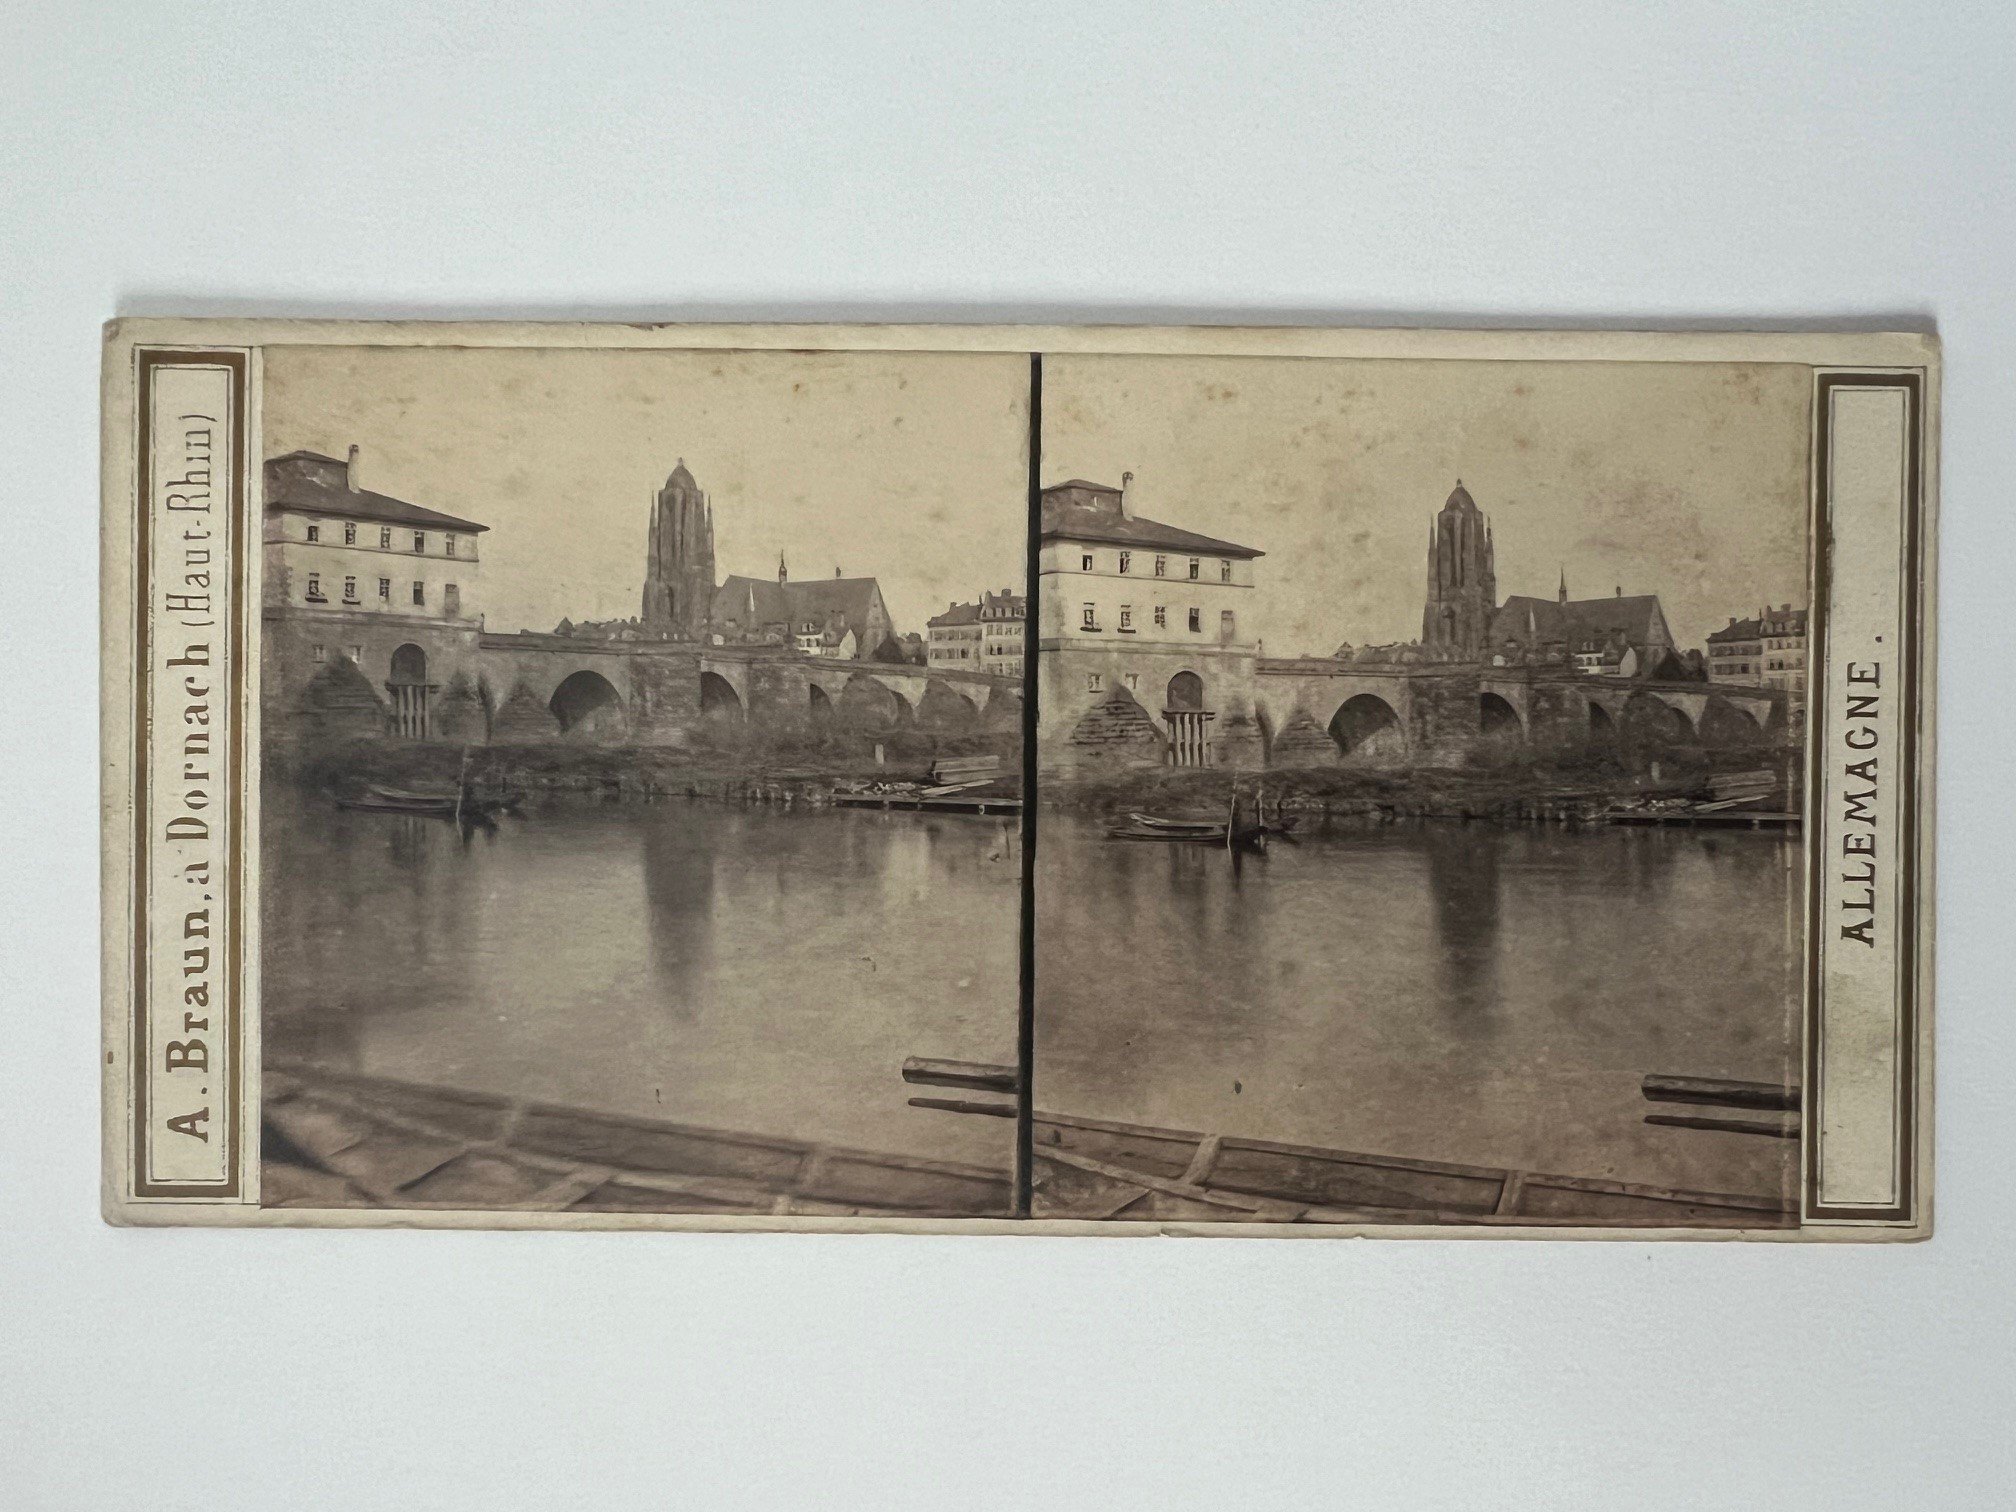 Stereobild, Adolphe Braun, Frankfurt, Nr. 2448, Brücke und Dom, ca. 1865. (Taunus-Rhein-Main - Regionalgeschichtliche Sammlung Dr. Stefan Naas CC BY-NC-SA)